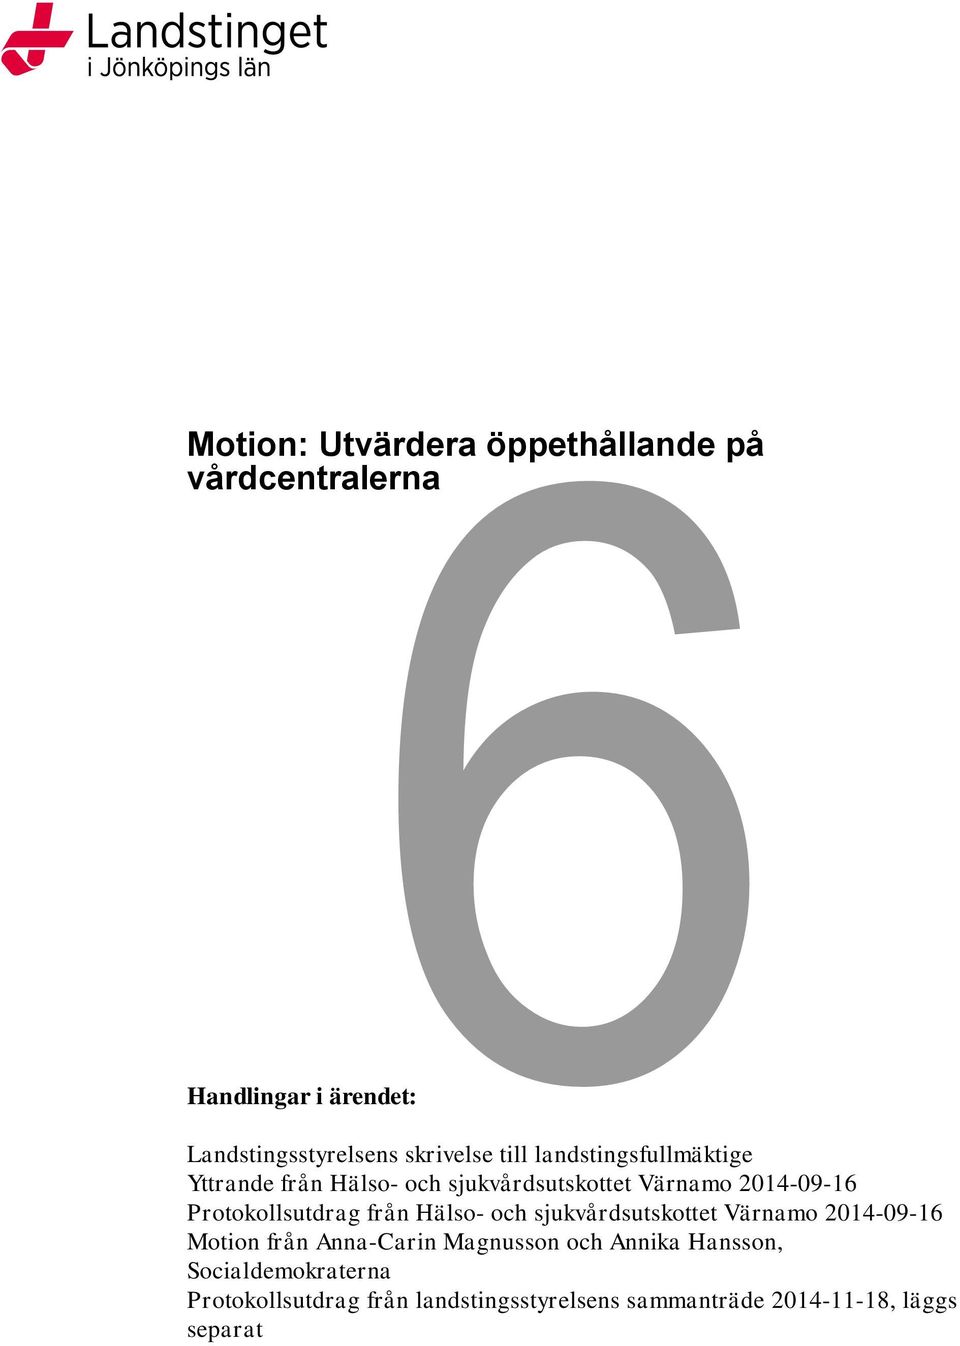 Protokollsutdrag från Hälso- och sjukvårdsutskottet Värnamo 2014-09-16 Motion från Anna-Carin Magnusson